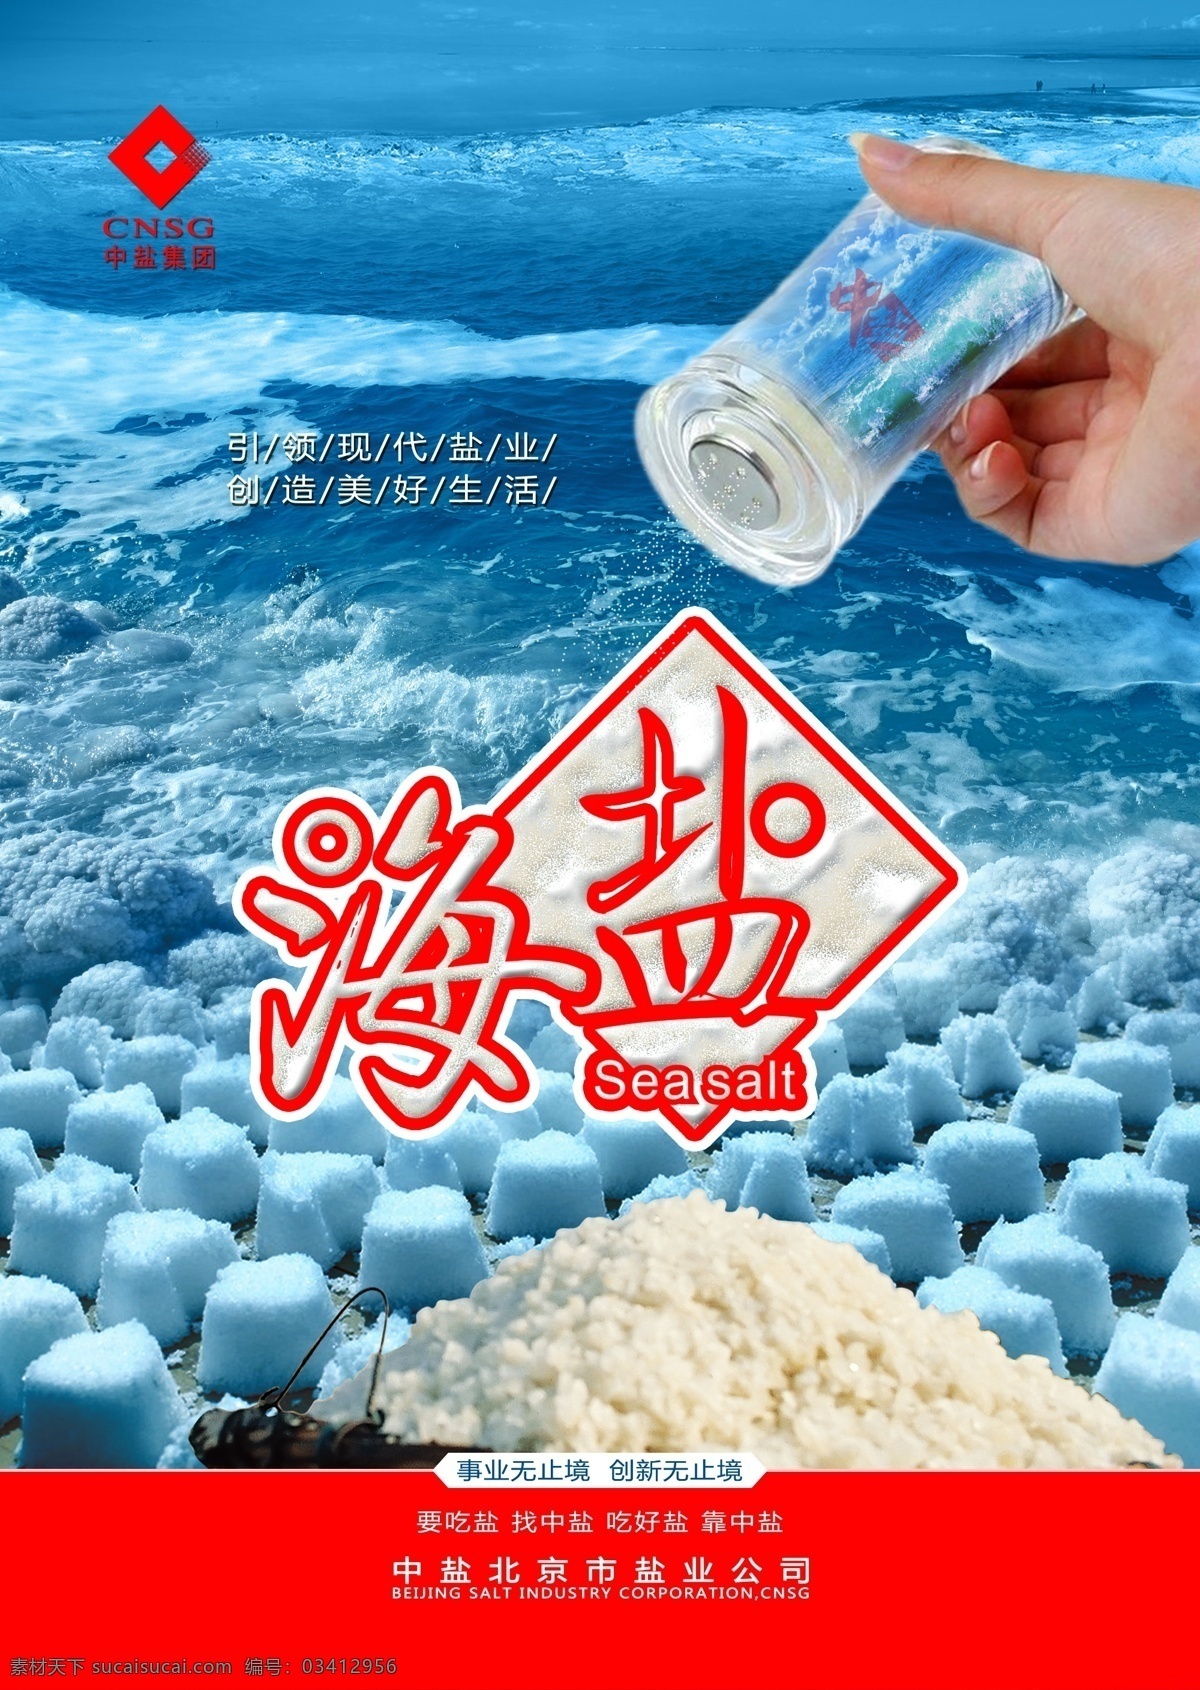 2014 中 盐 产品 提案 中盐 产品海报设计 超市海报 产品主视觉 食盐广告 海报 2014中盐